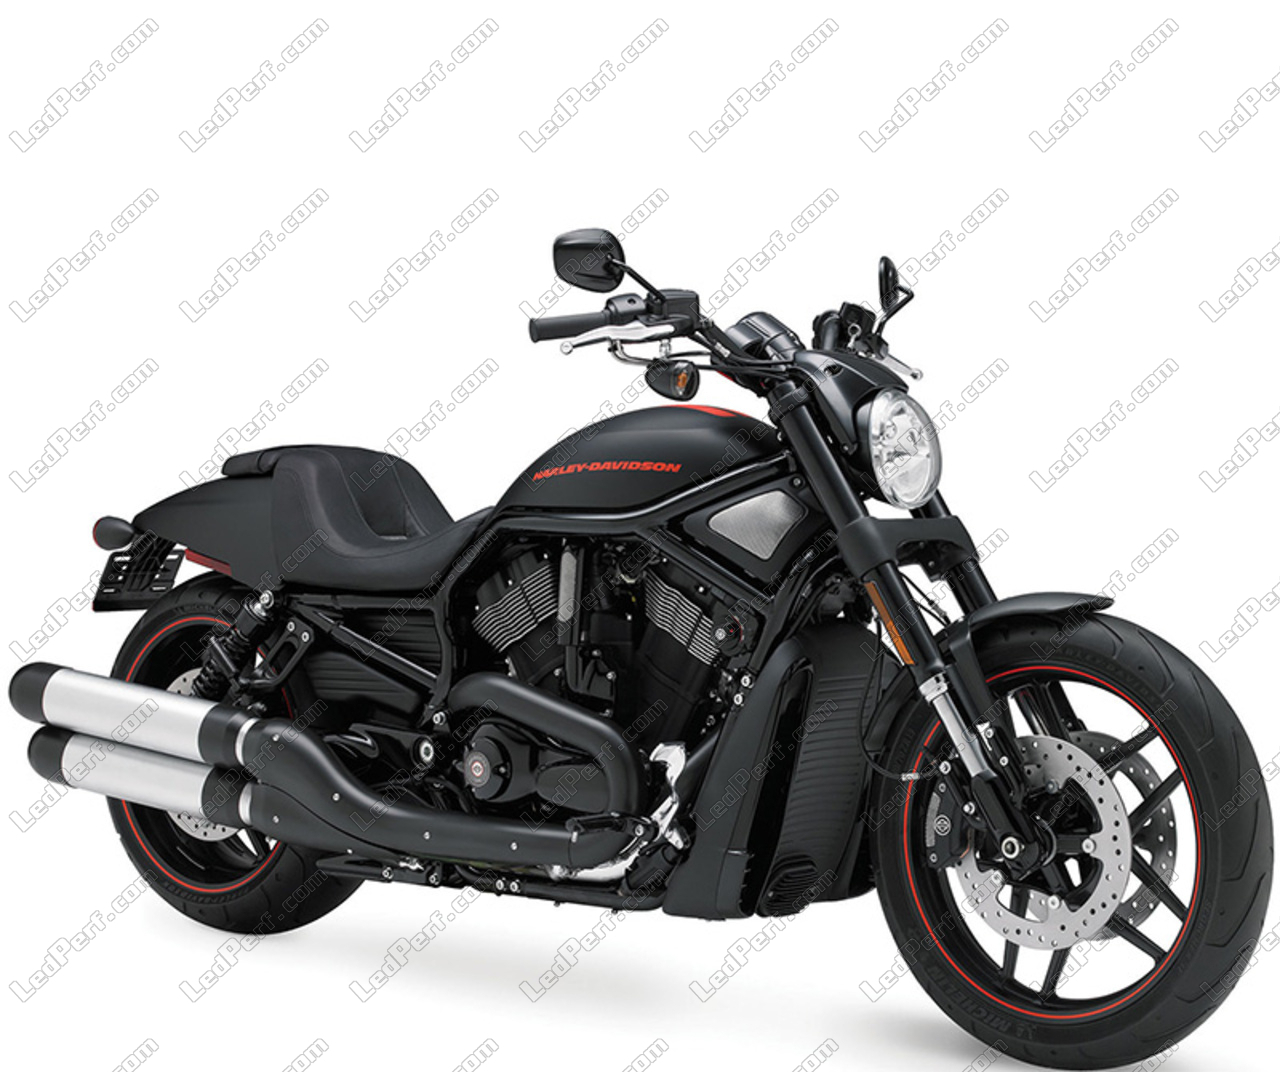 2021 Pan America 1250 Harley Davidson Deutschland